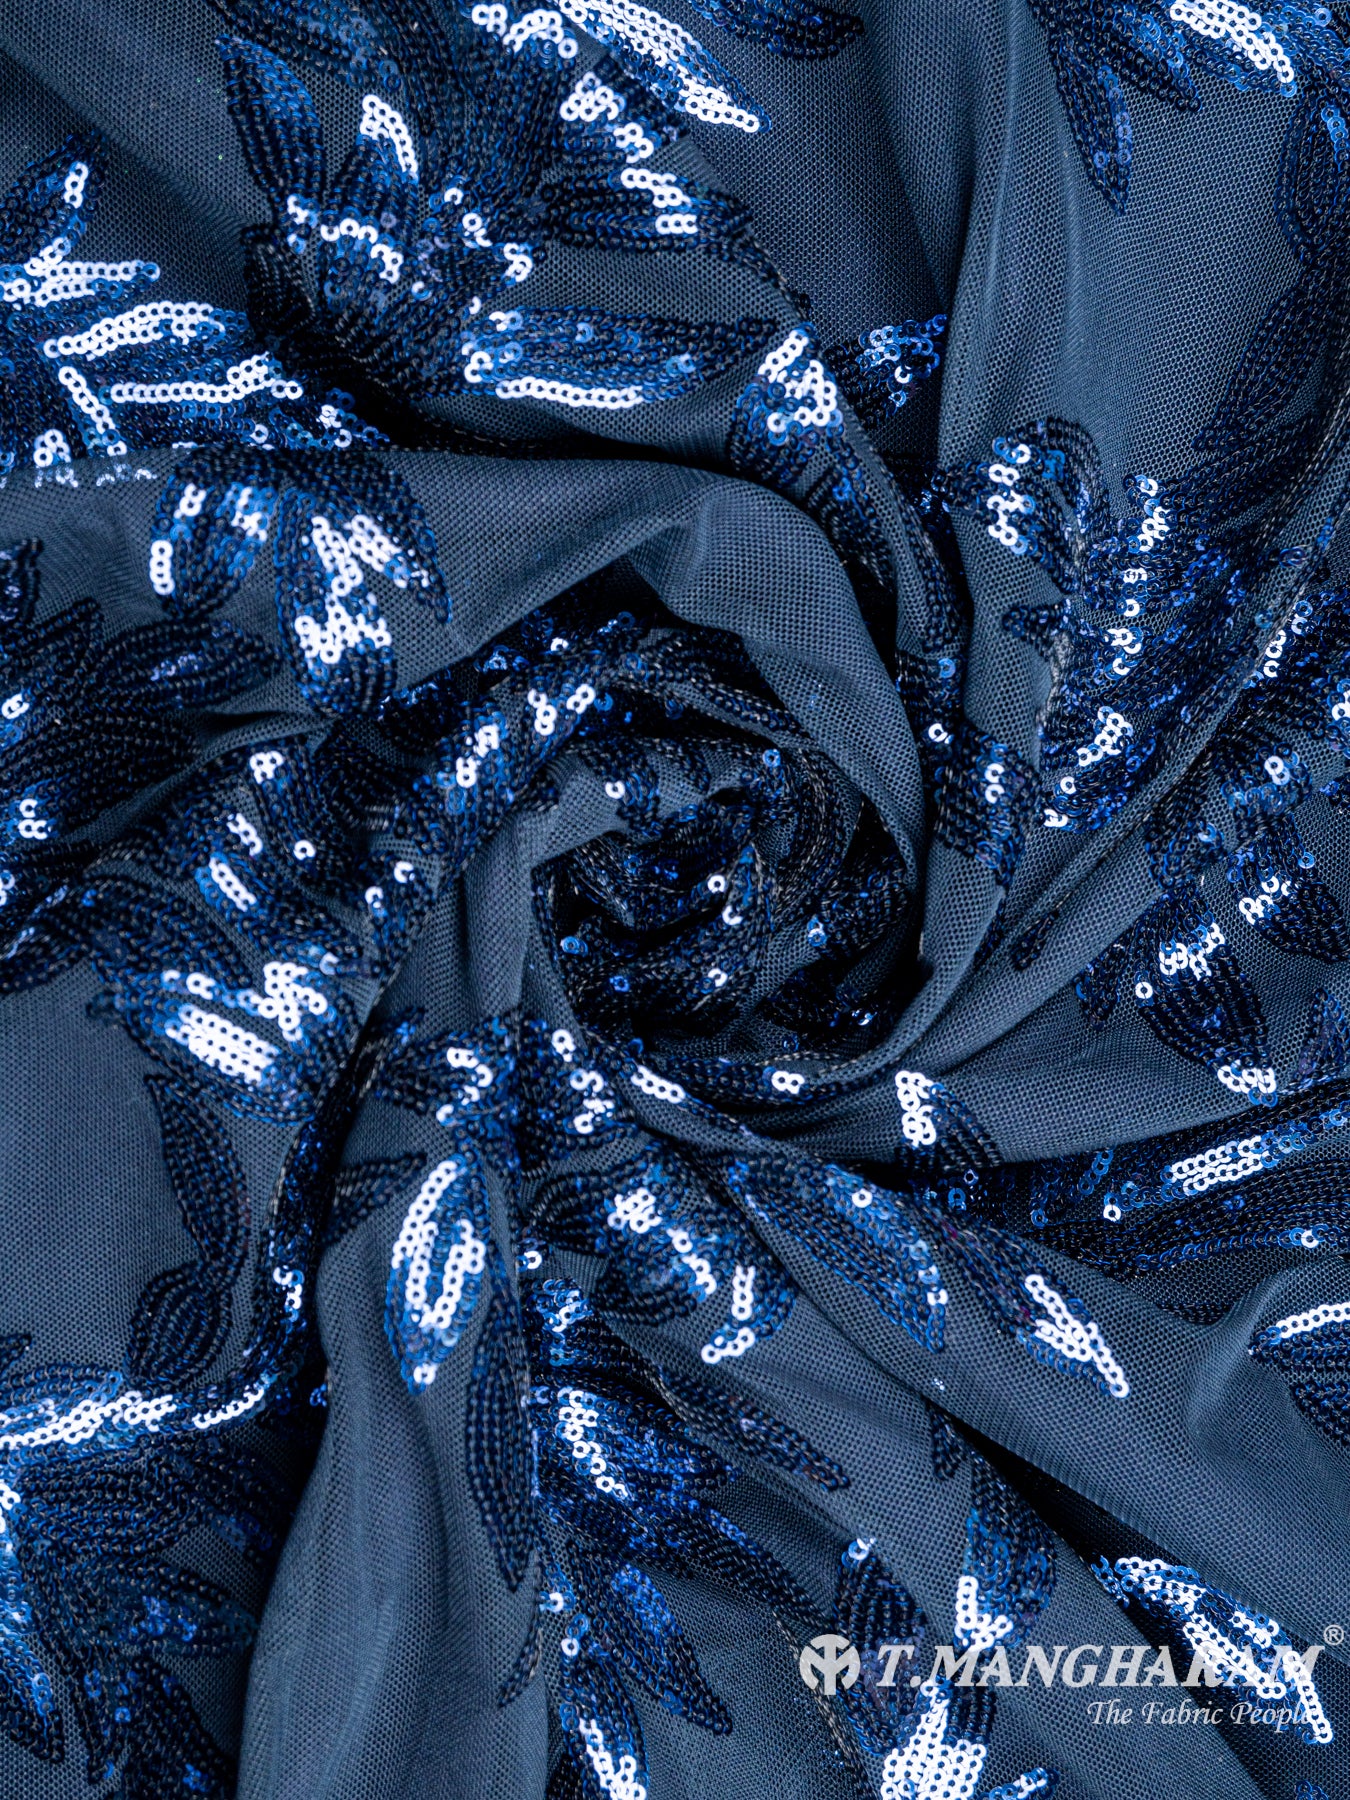 Blue Fancy Net Fabric - EB3929 view-1